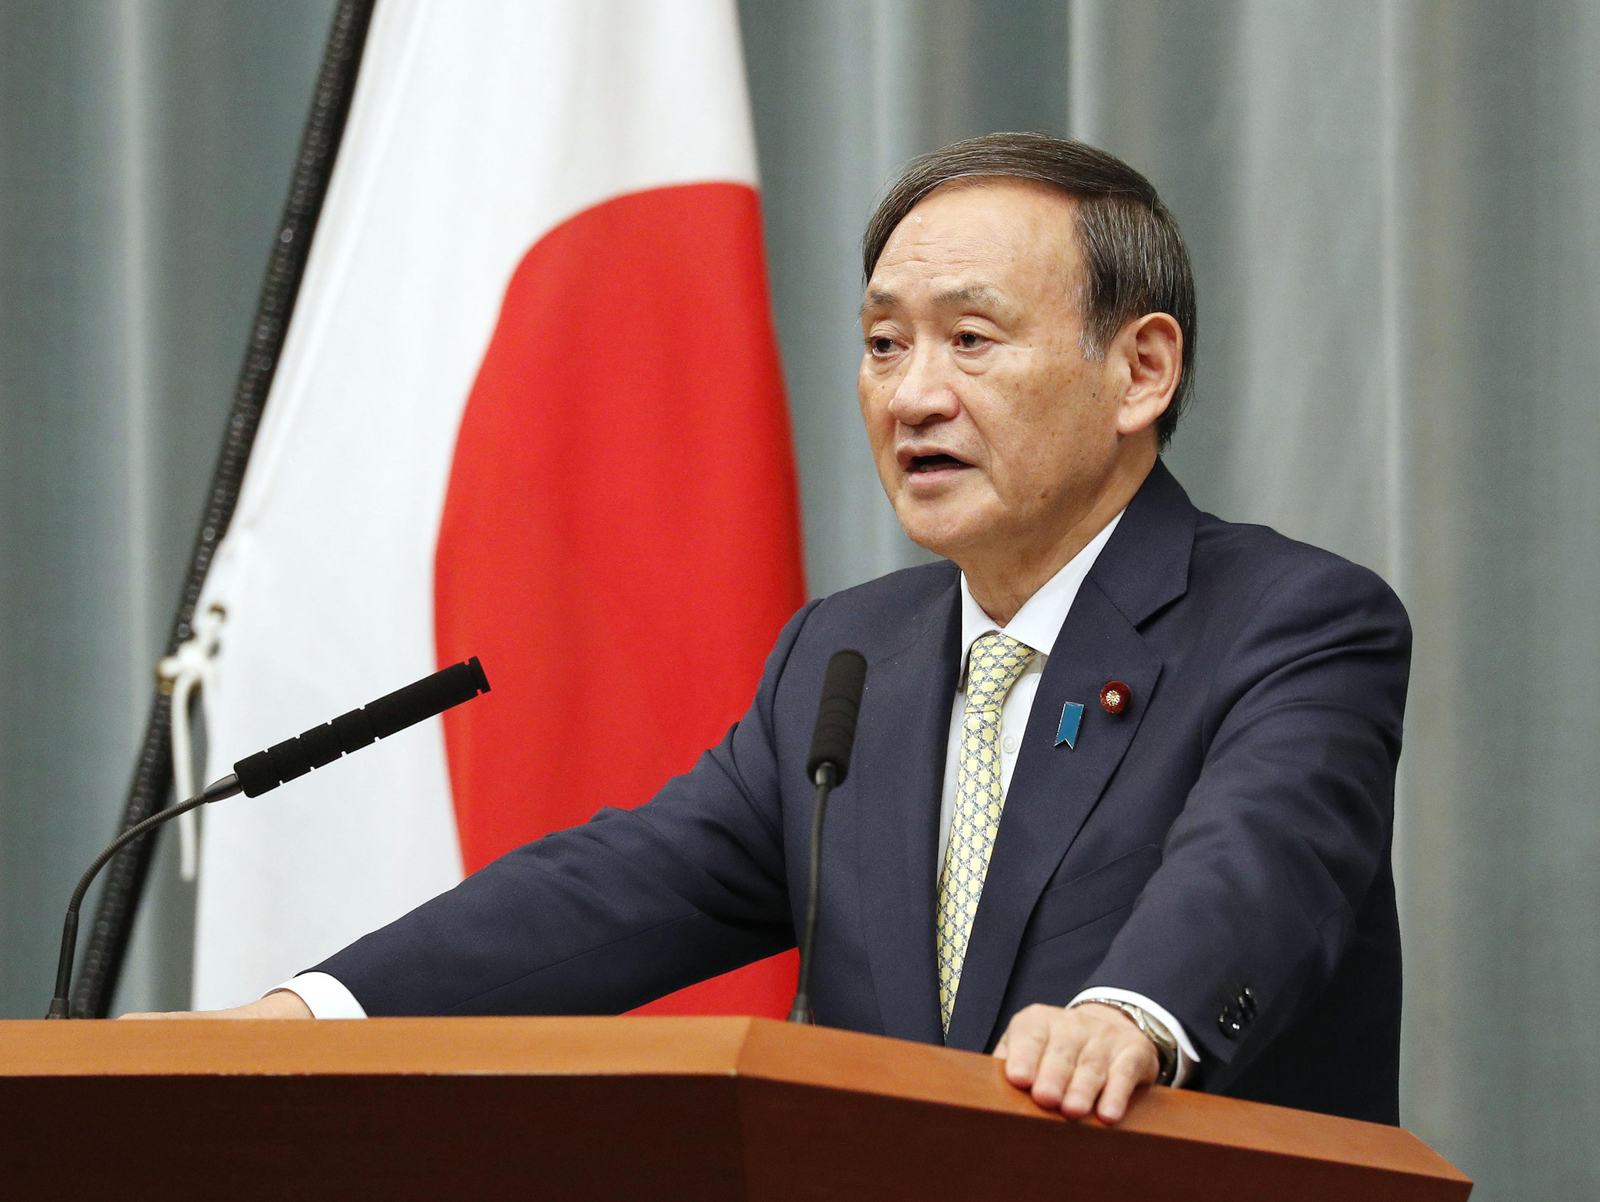 Programa. El secretario en jefe del gabinete japonés, Yoshihde Suga, informó detalles del nuevo programa de defensa. (AP)